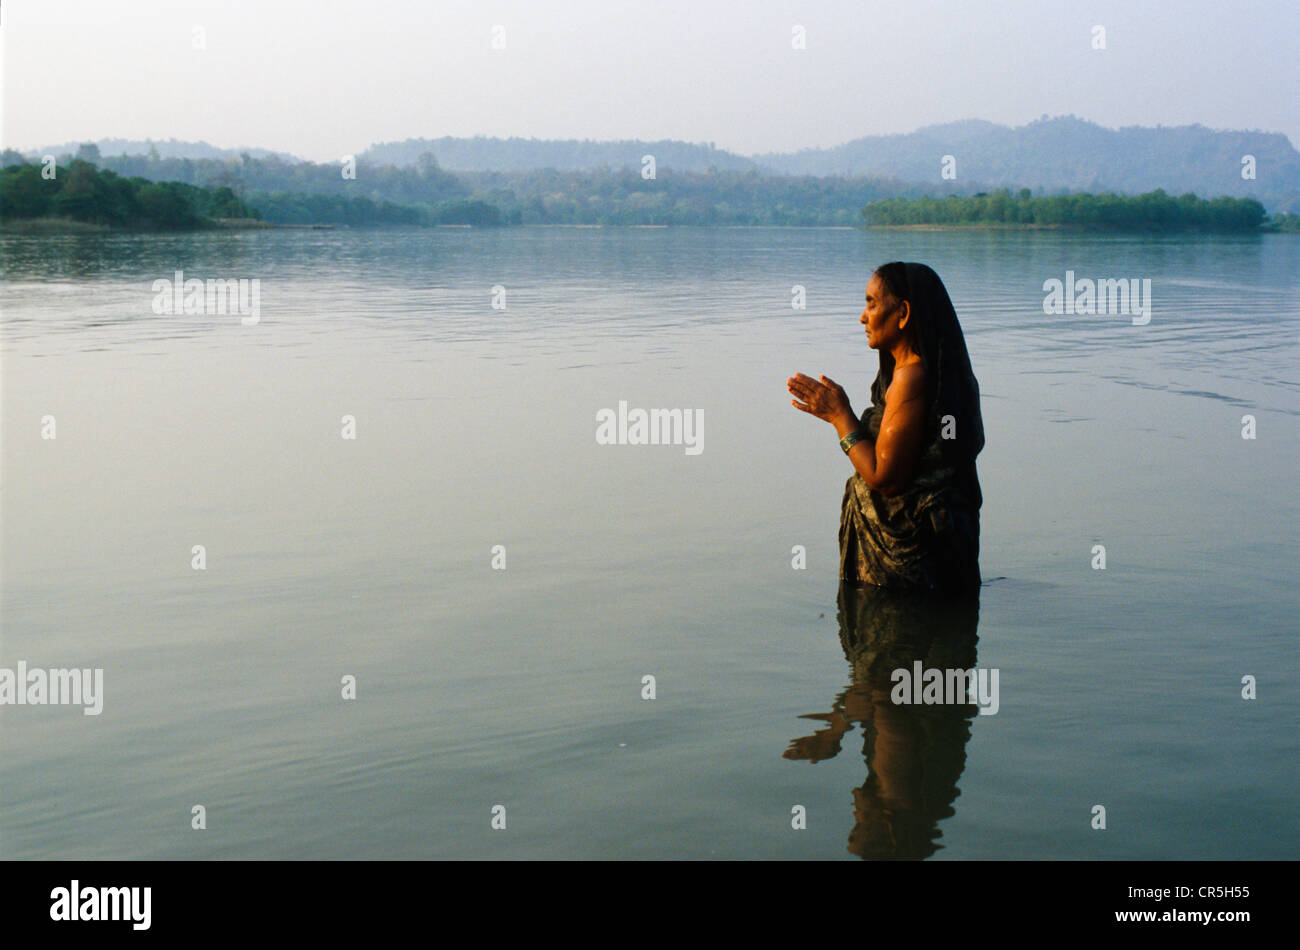 Mujer orando a Dios el frío en el agua cristalina del río Ganges, Haridwar, Uttarakhand, antiguamente Uttaranchal, India, Asia Foto de stock